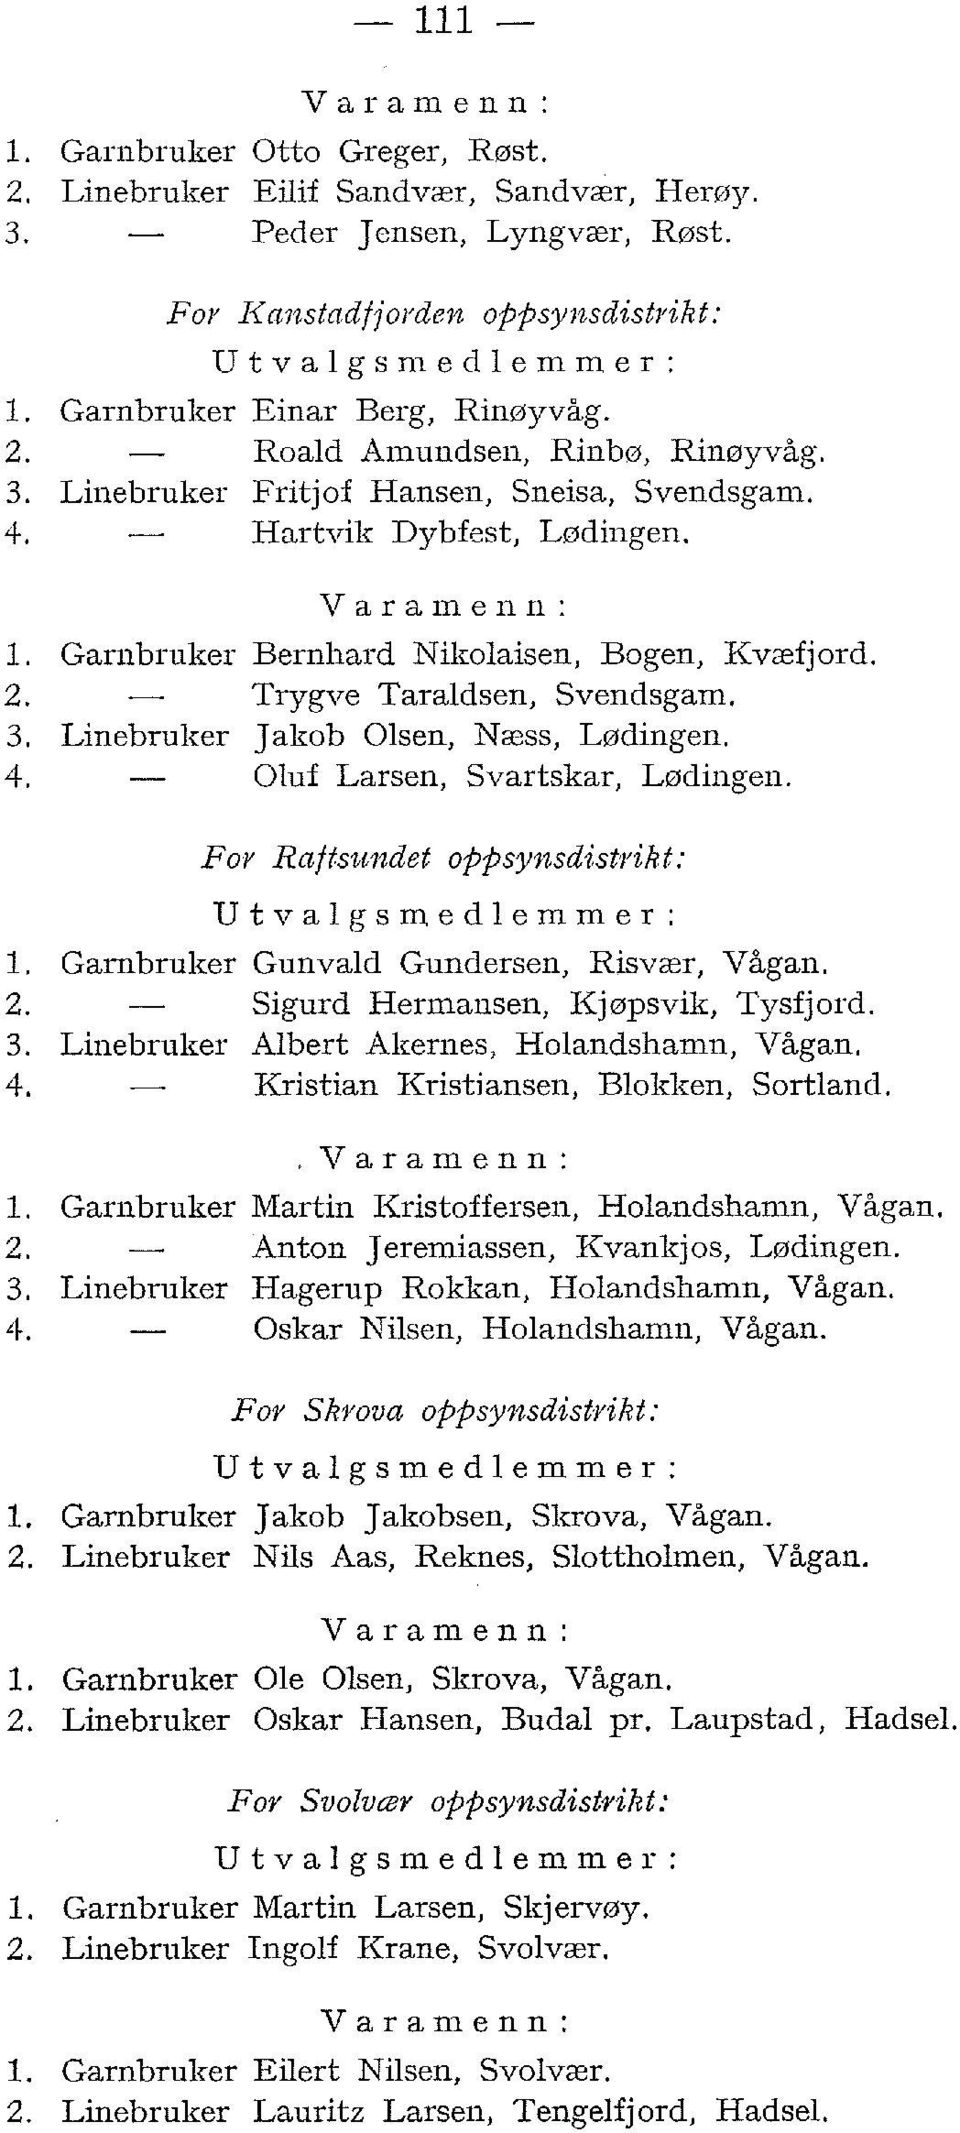 2. Trygve Taraldsen, Svendsgam. 3. Linebruker Jakob Olsen, Næss, Lødingen. 4. Oluf Larsen, Svartskar, Lødingen. For Raftsundet oppsynsdistrikt: Utvalgsmedlemmer: l.